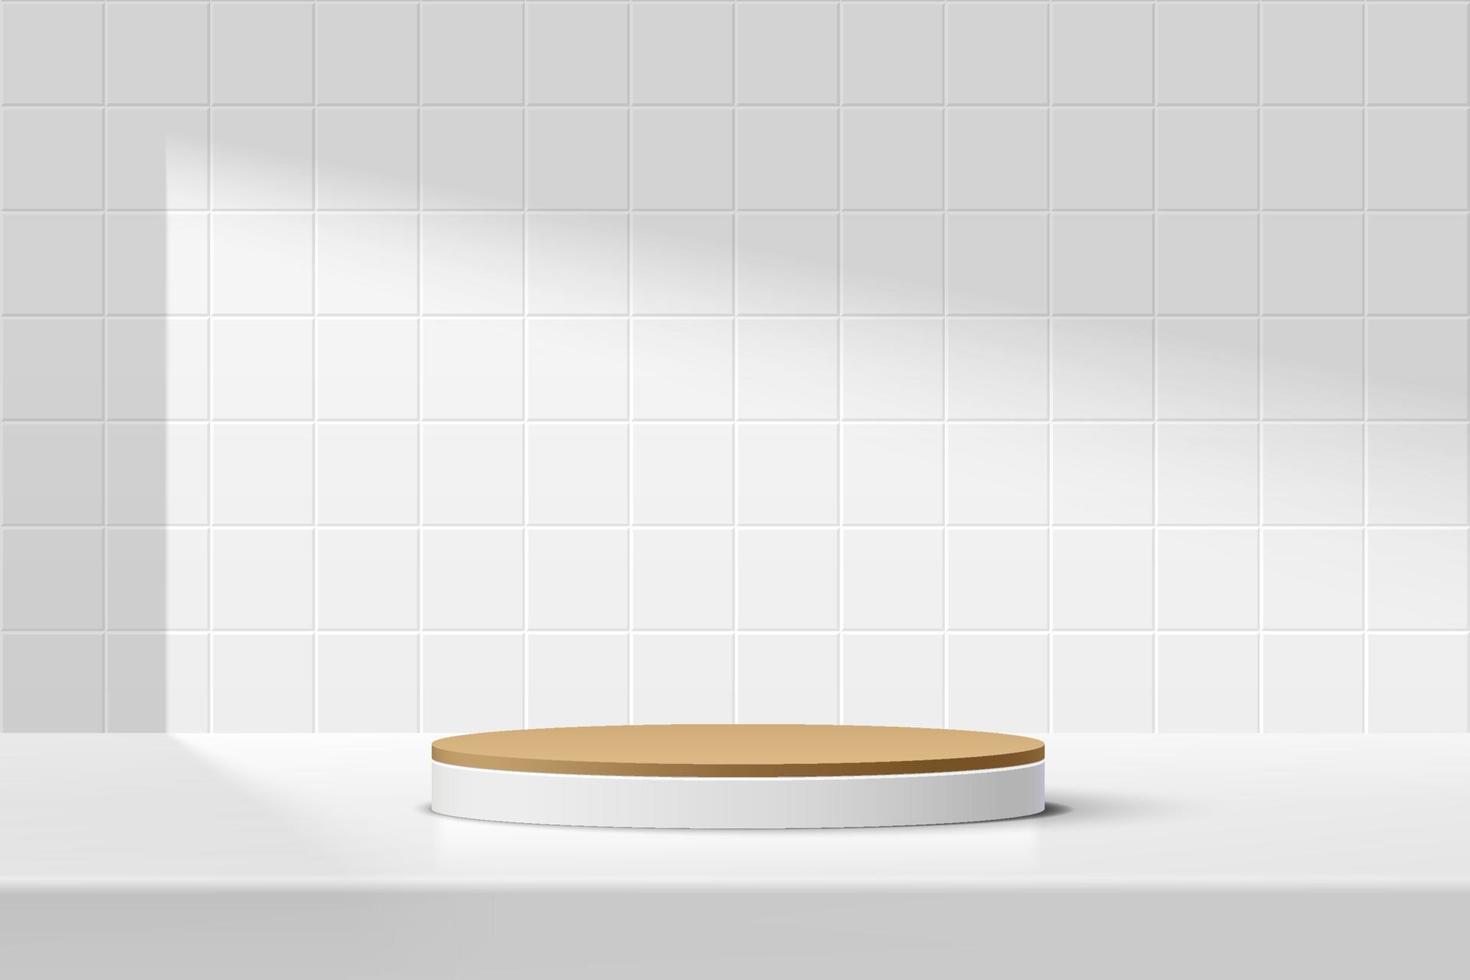 podio astratto 3d bianco, marrone con piedistallo cilindro sul tavolo con scena di parete bianca con piastrelle quadrate. rendering vettoriale design geometrico minimo della piattaforma in ombra per la presentazione del prodotto.